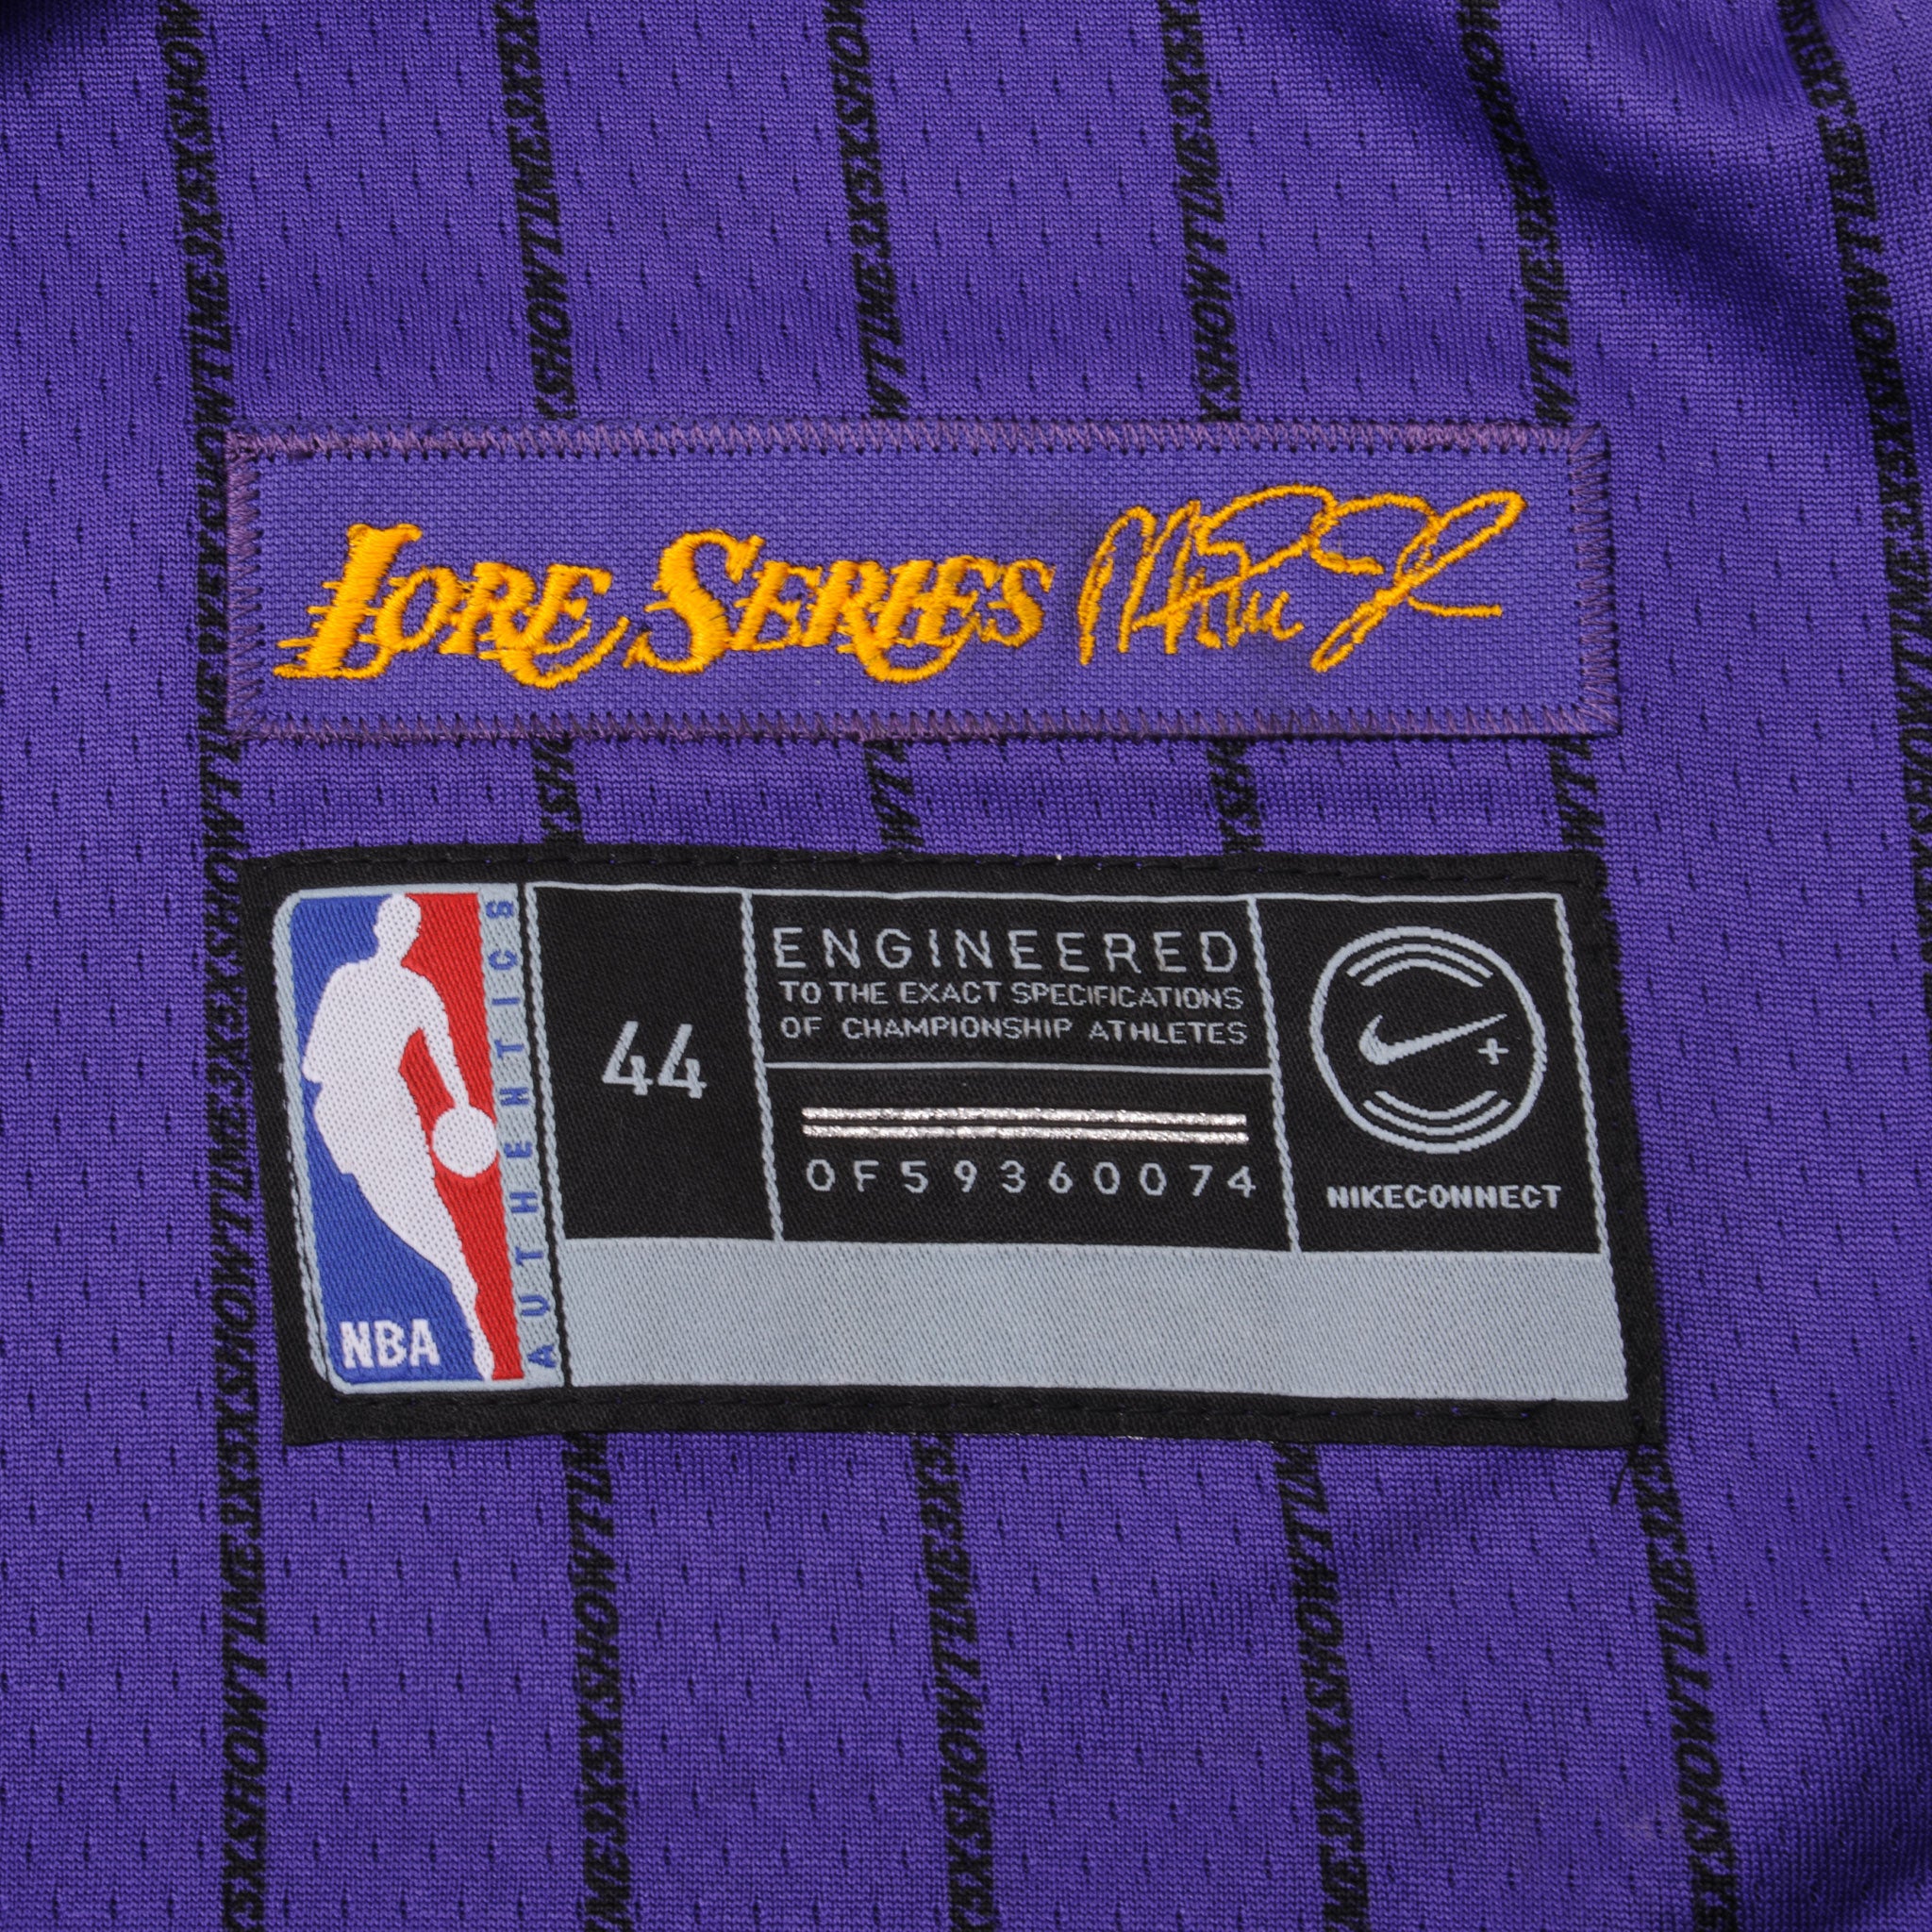 Lakers city edition lore series swingman jersey size small Kobe